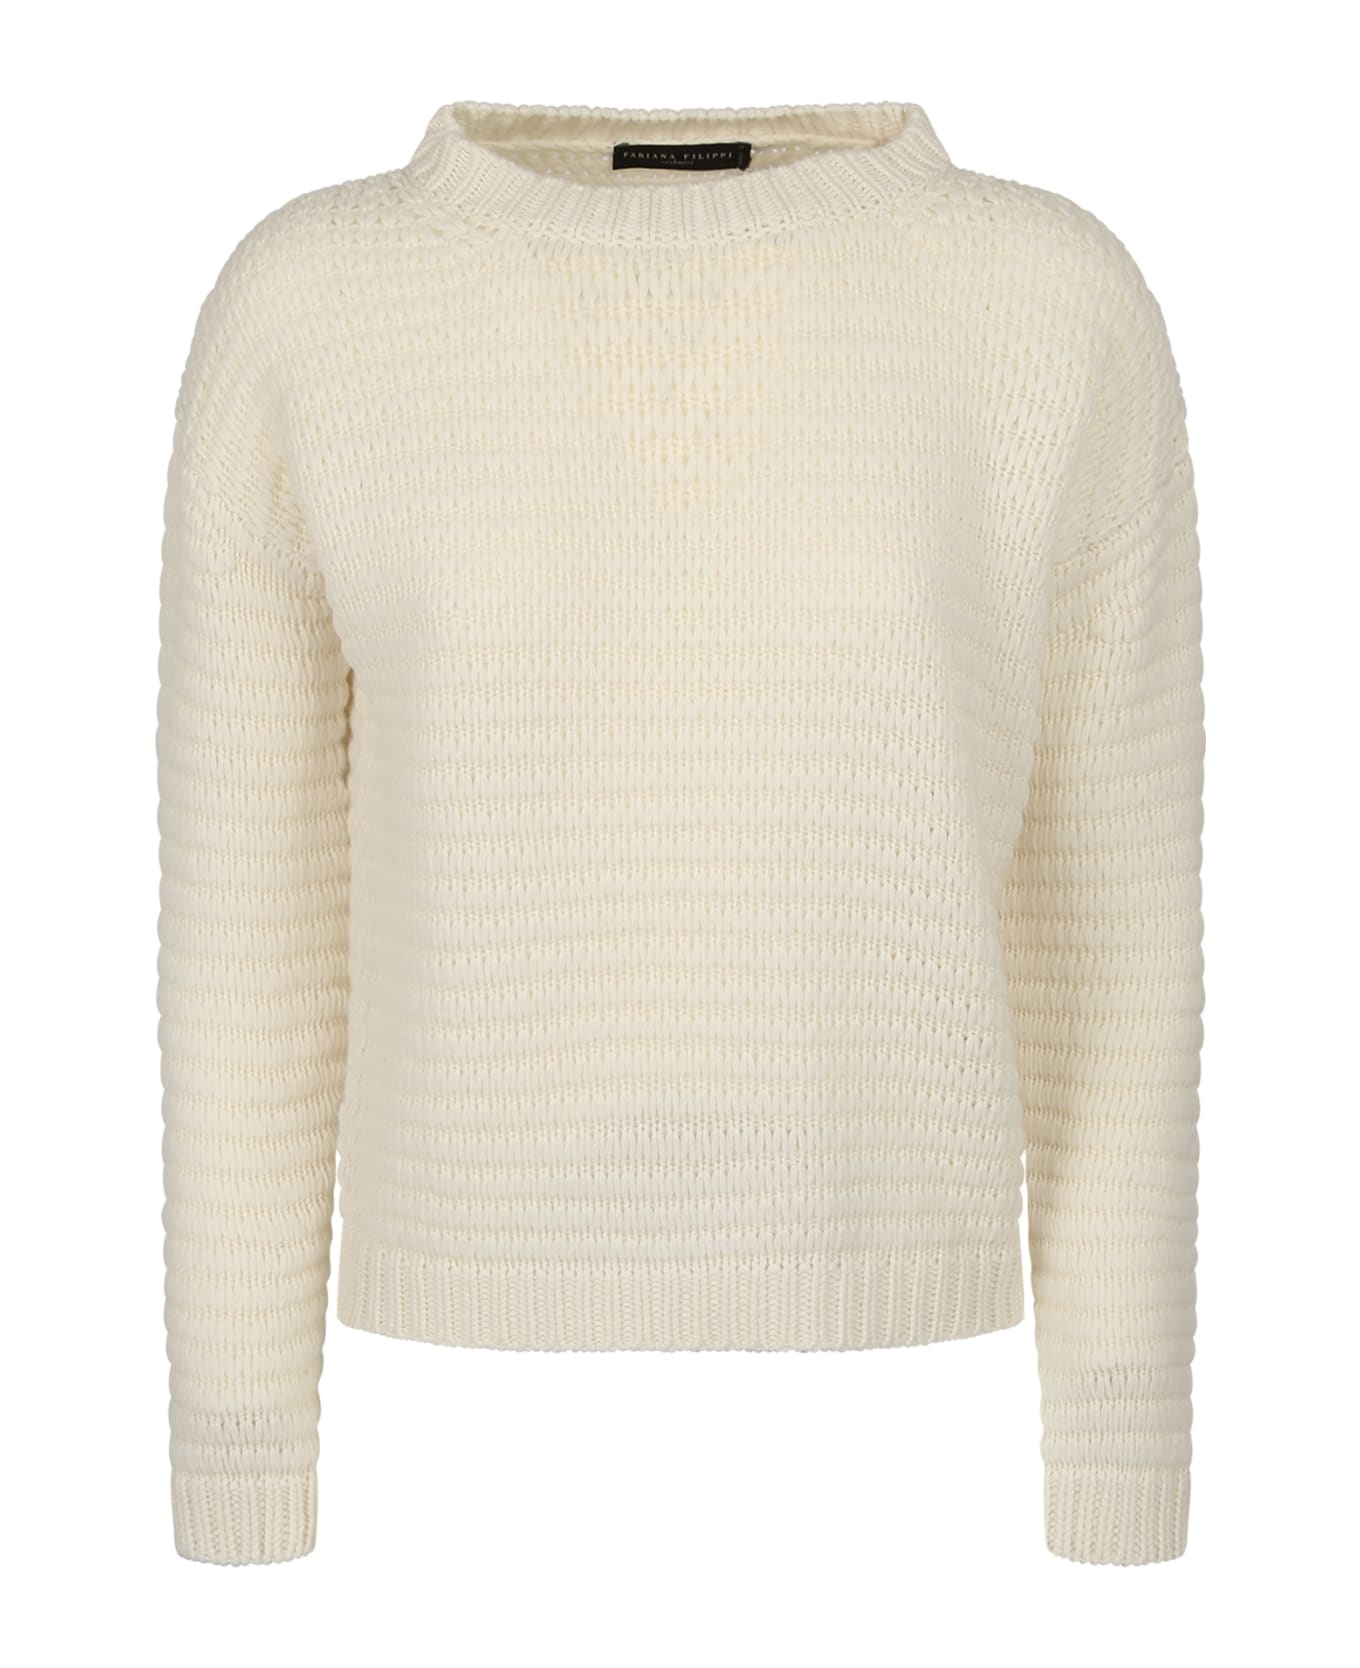 Fabiana Filippi Relaxed Fit Sweater - White ニットウェア